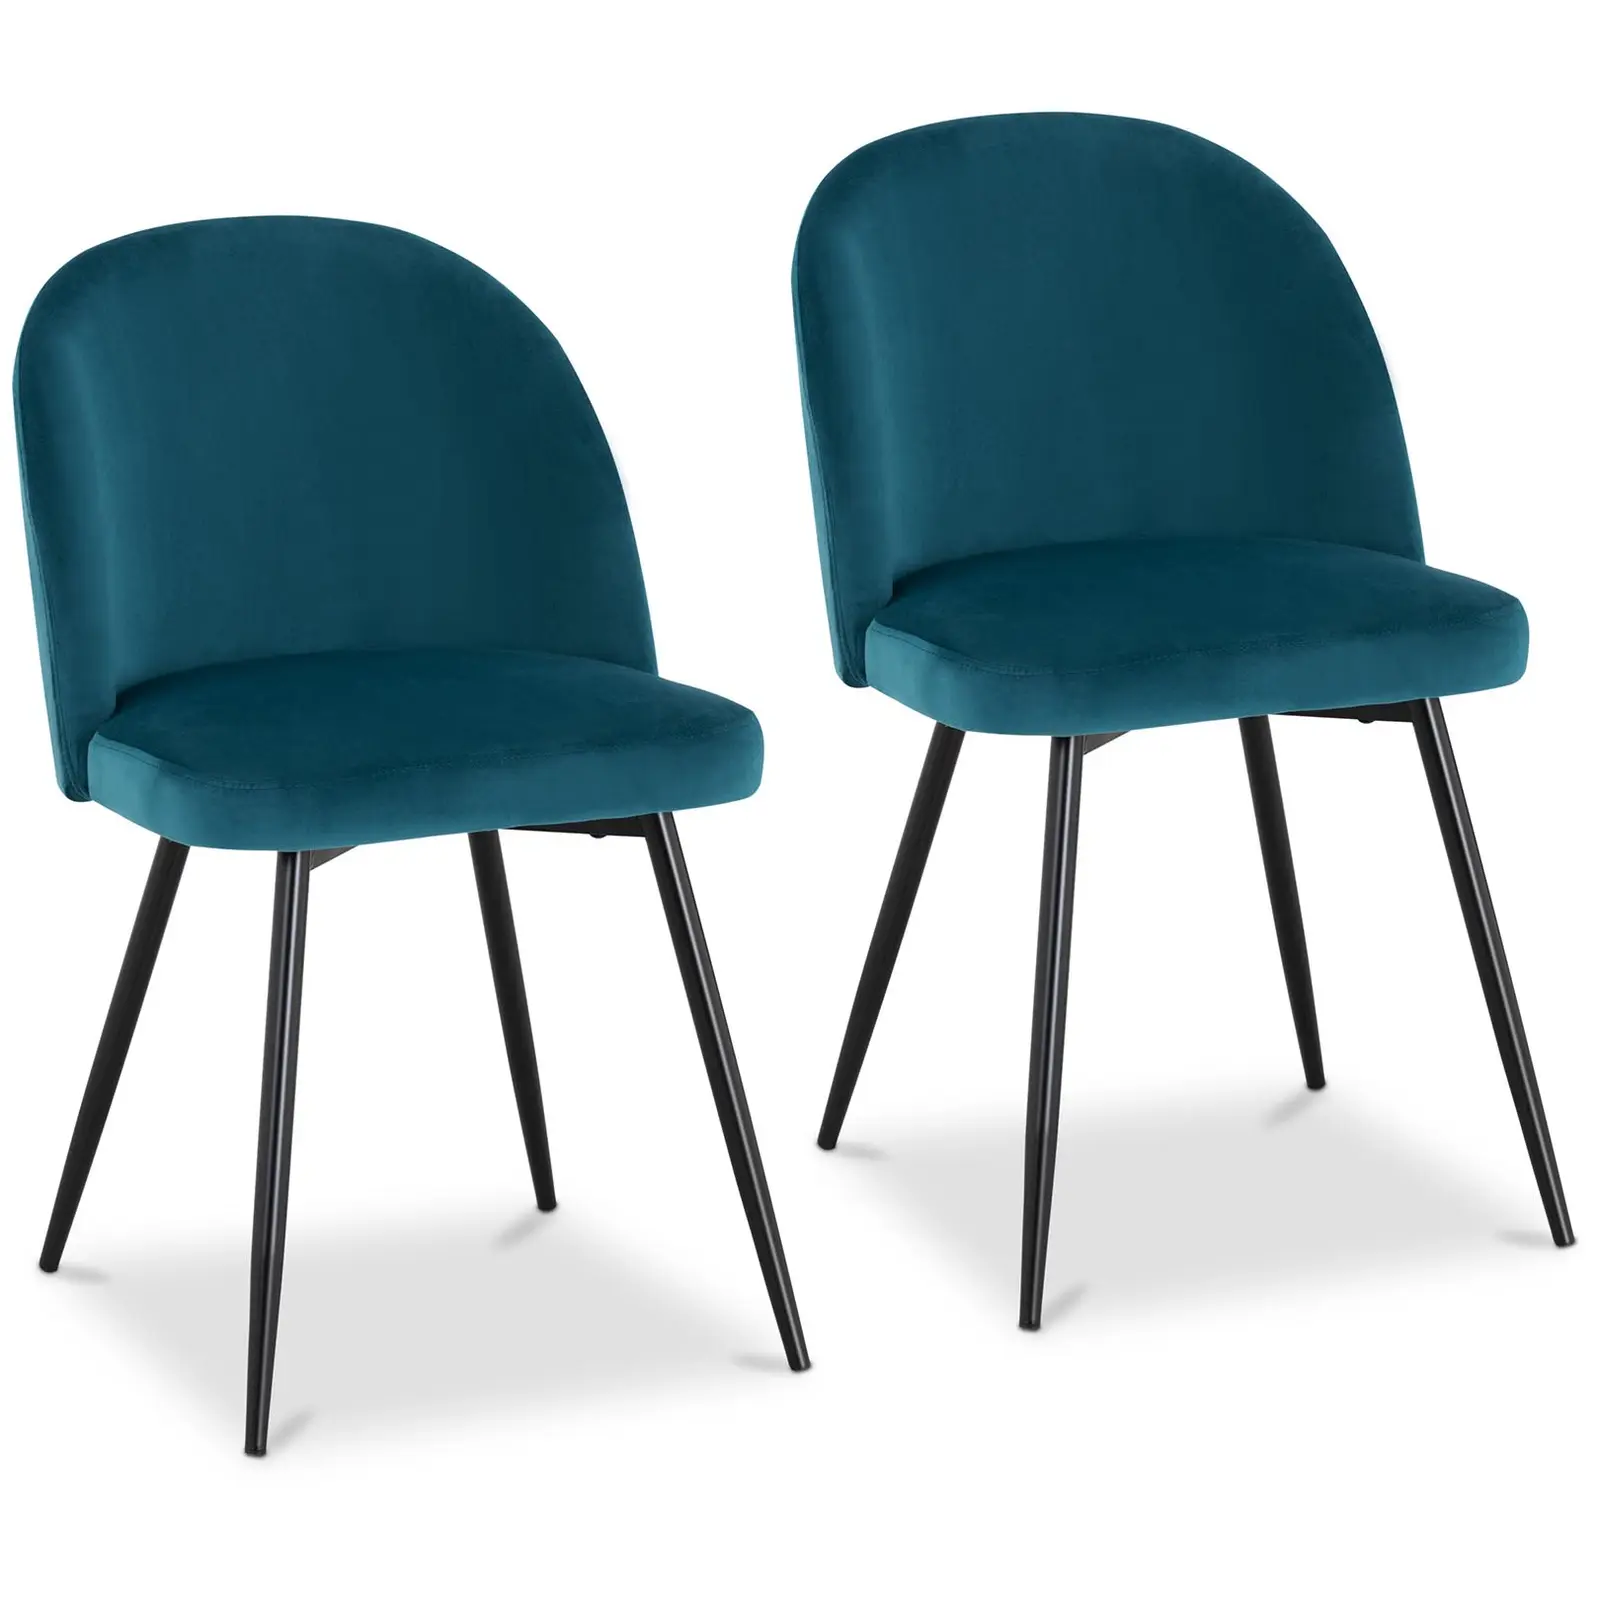 Čalouněná židle - sada 2 kusů - do 150 kg - sedací plocha 48 x 41,5 cm - černá